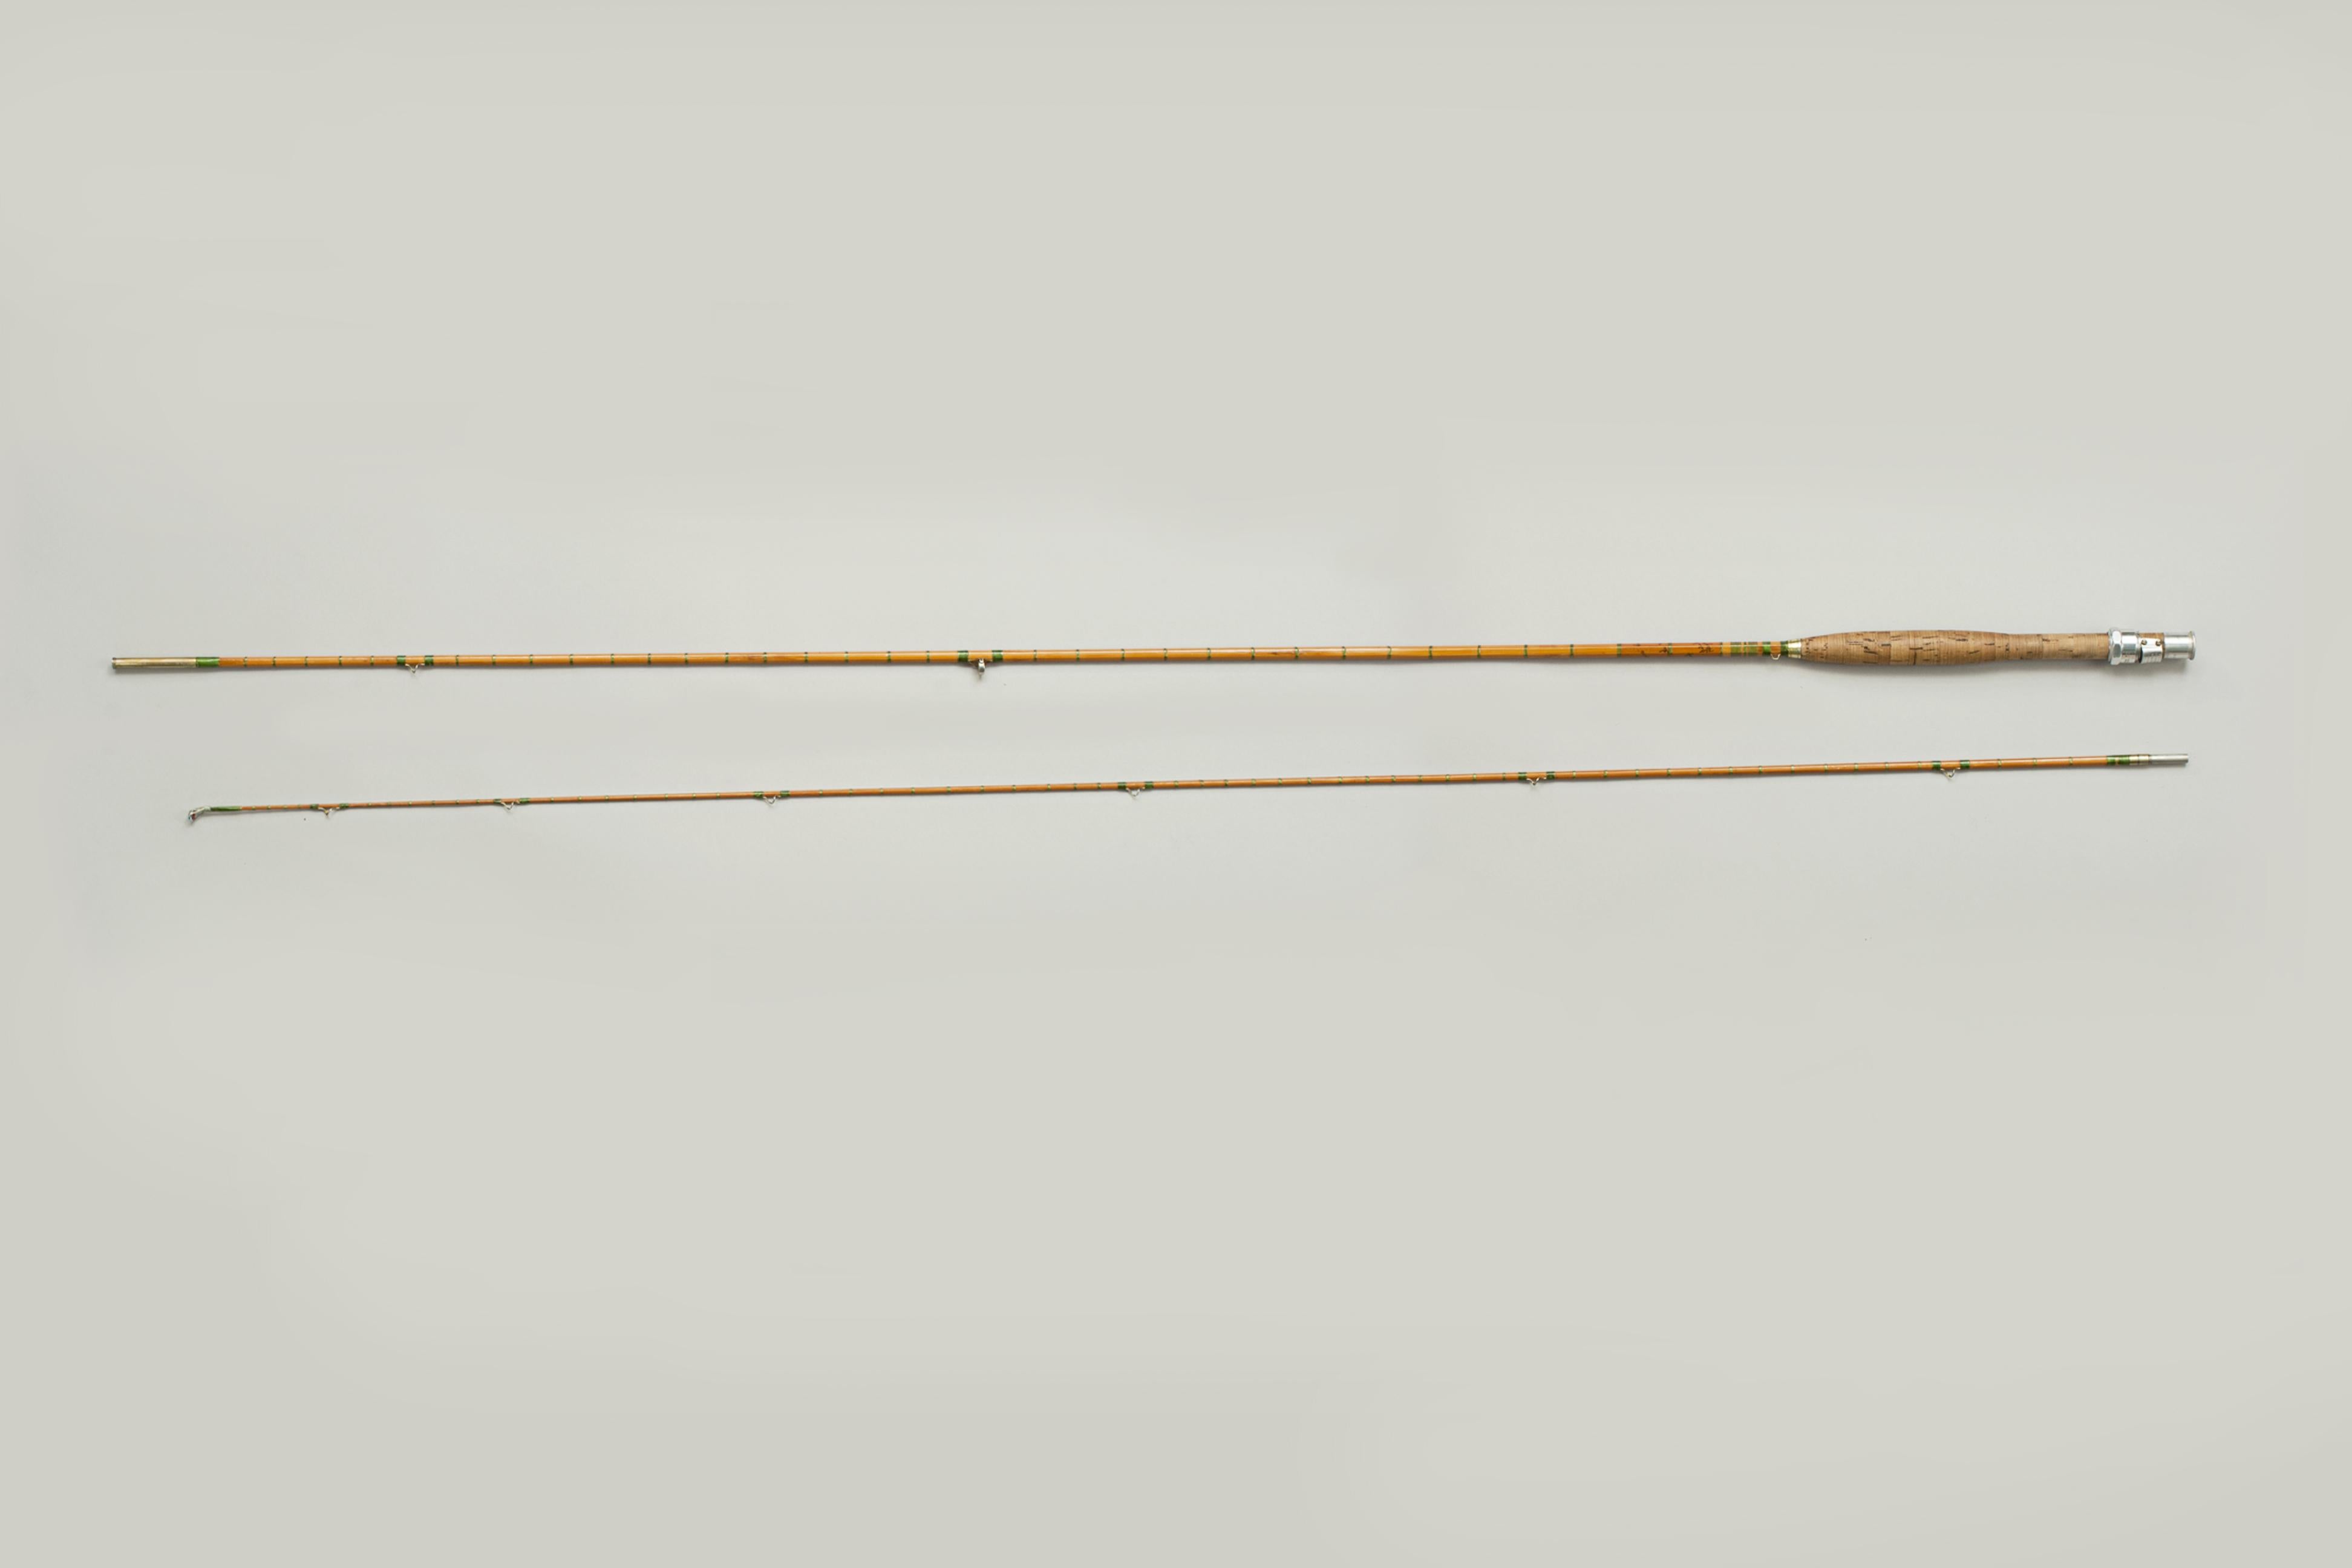 Bamboo Hardy Fishing Rod, 